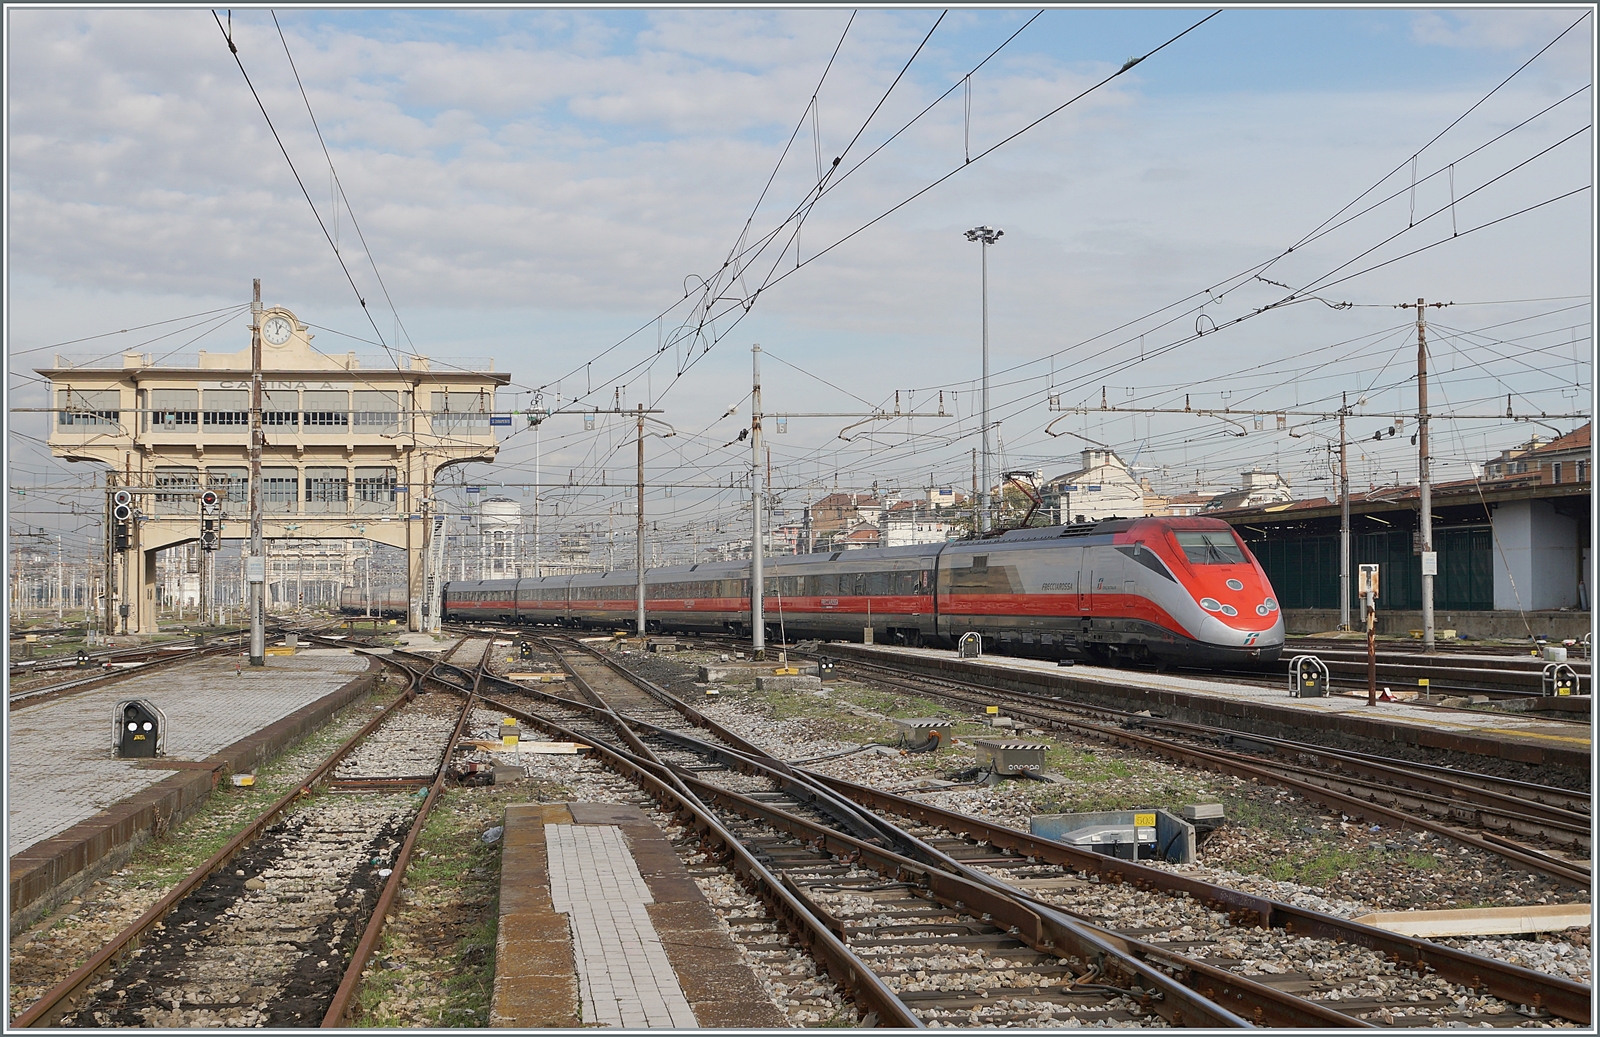 Ein FS Trenitalia ETR 500 erreicht Milano Centrale. Obwohl von der Optik her mir die ETR 400 besser gefallen, reise ich lieber in den sehr komfortablen ETR 500. 

8. November 2022